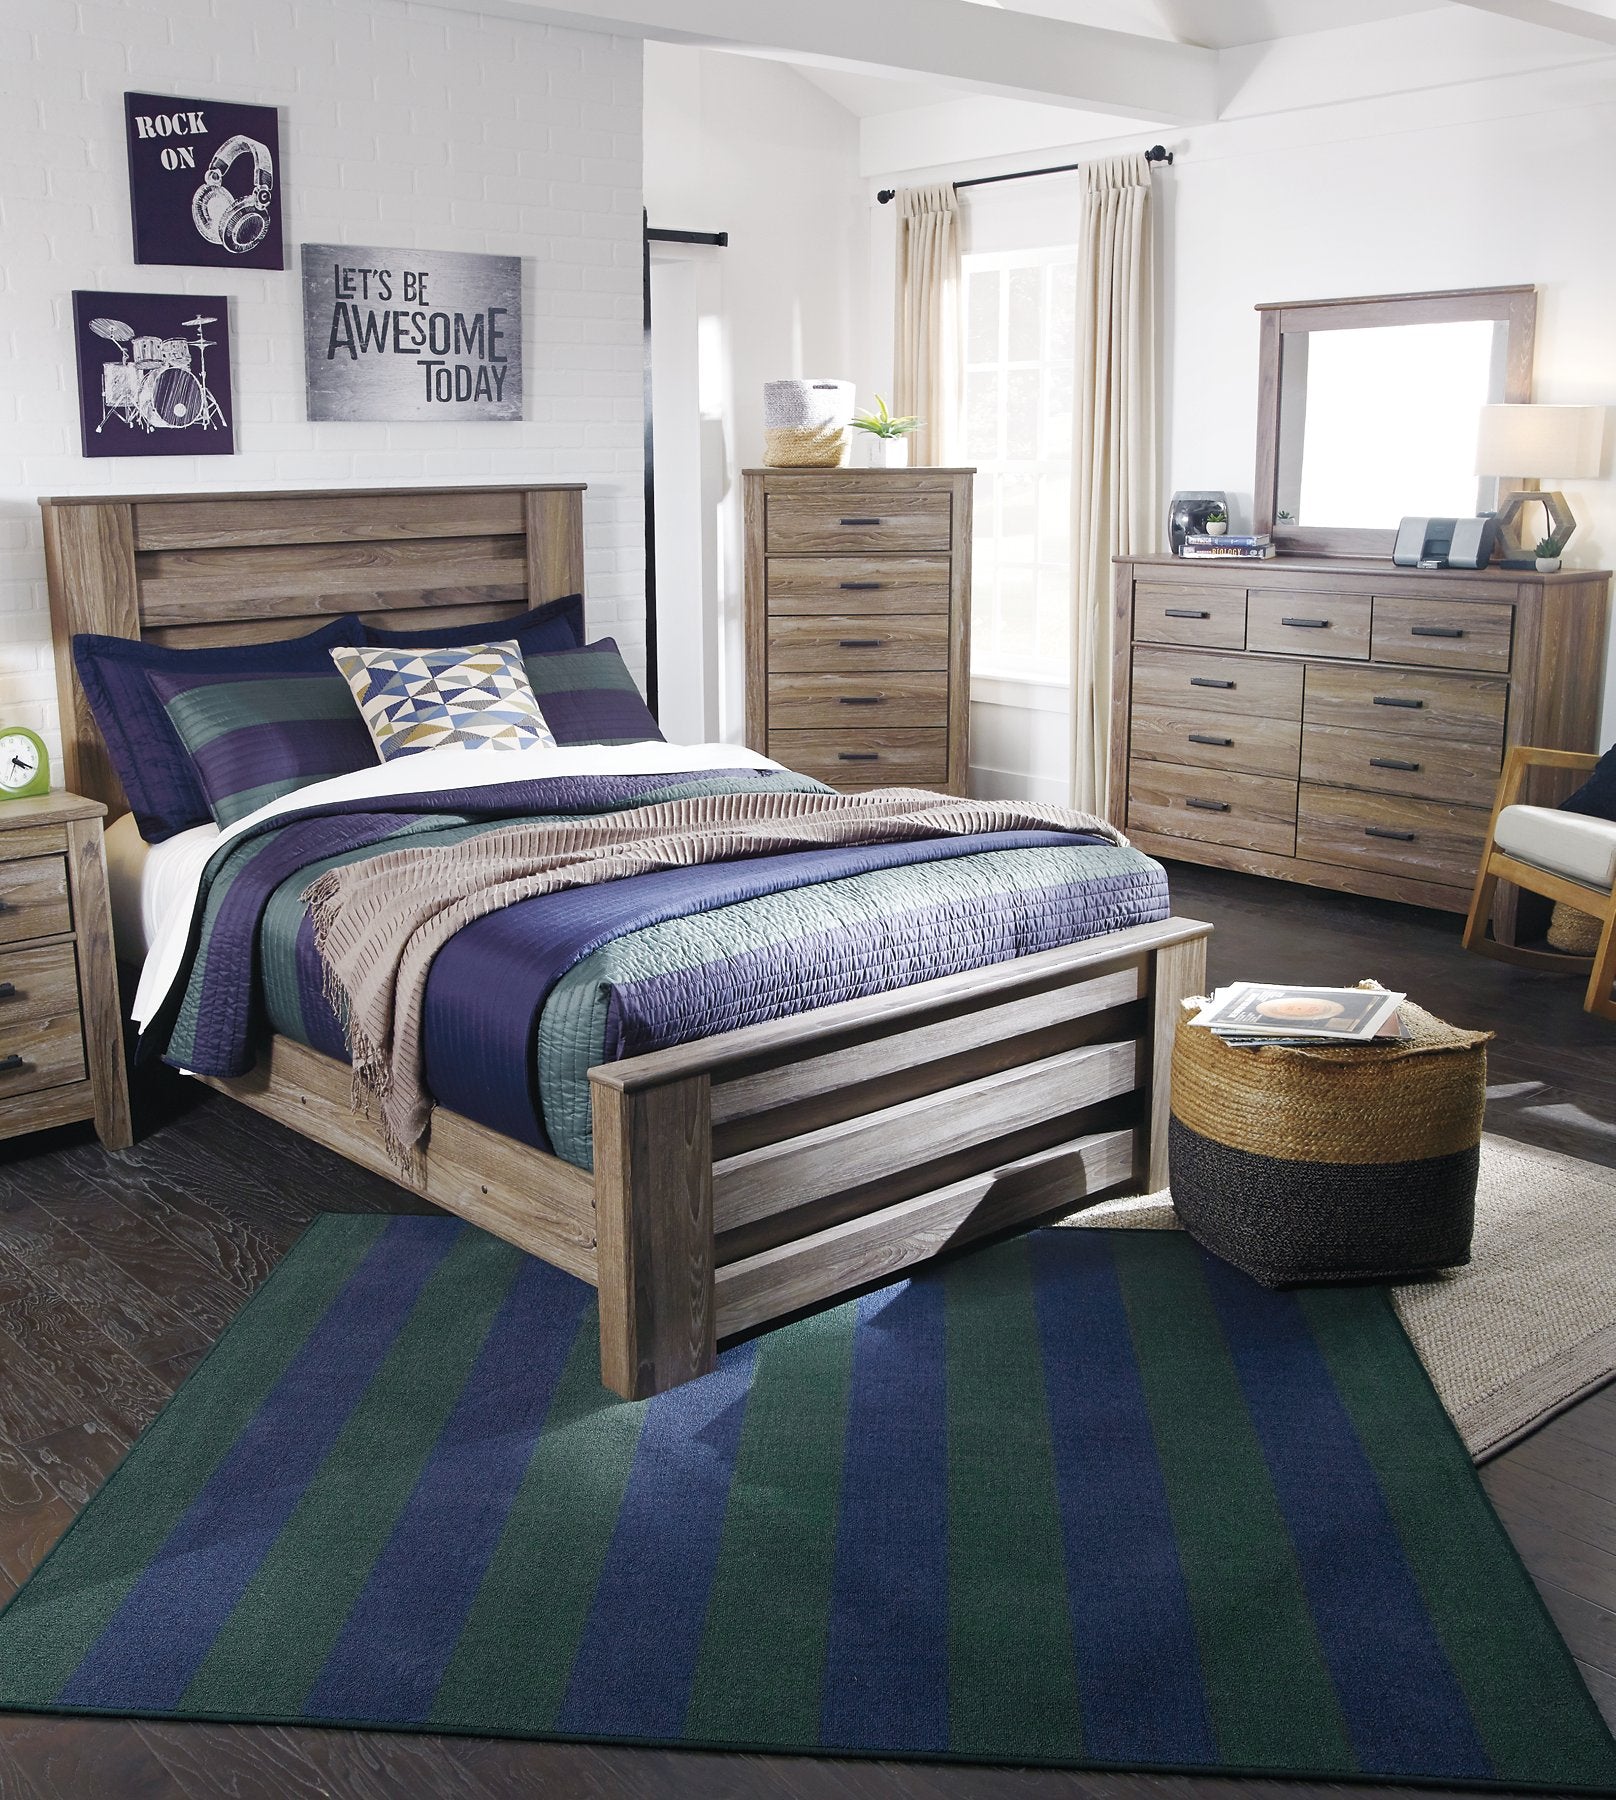 Zelen Bed - Half Price Furniture